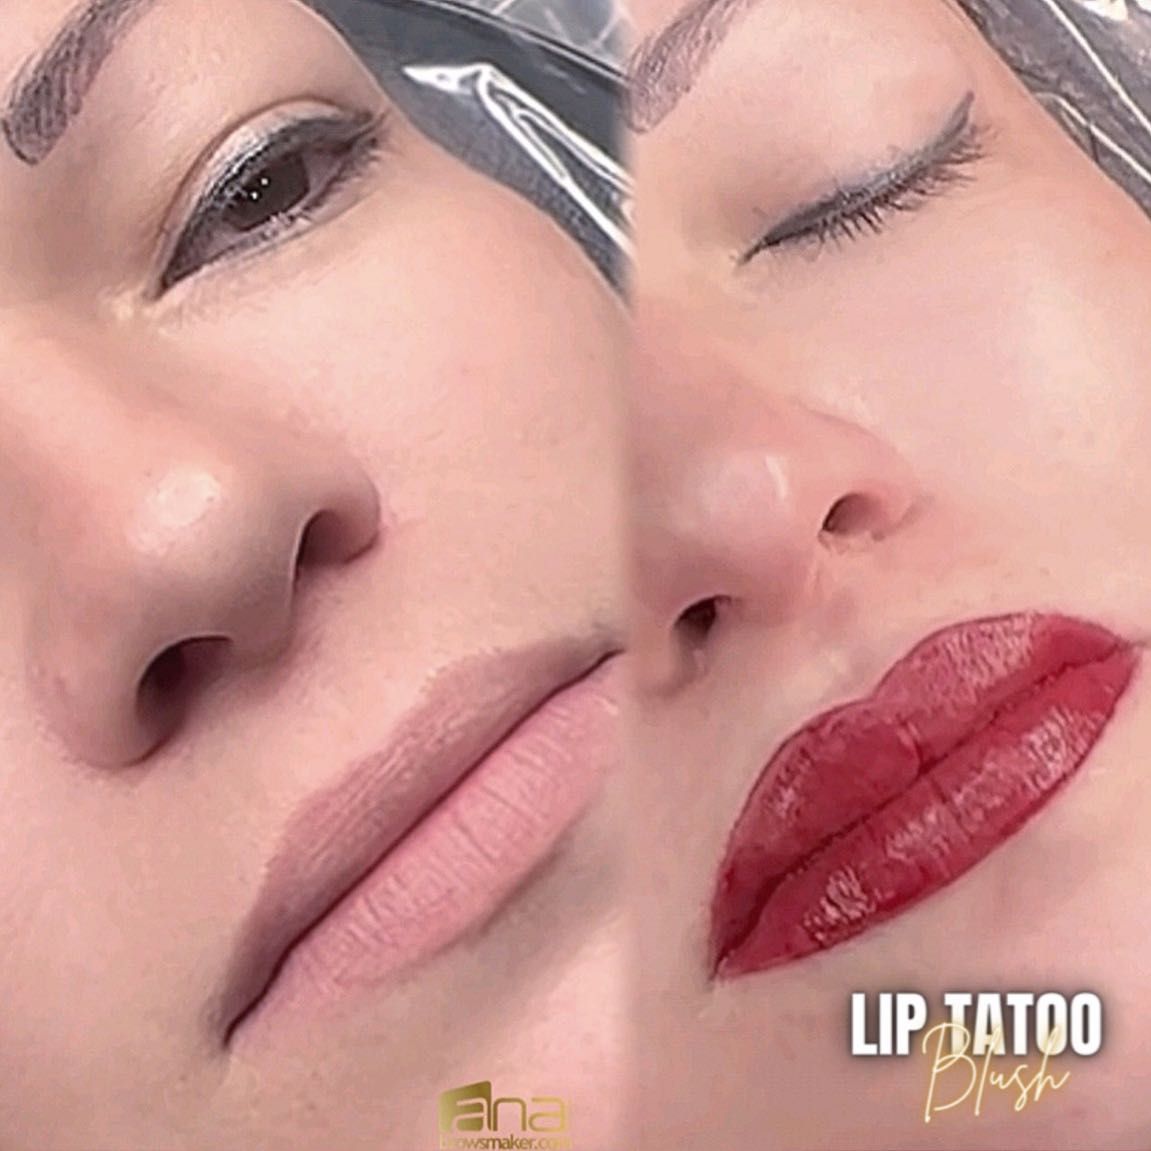 Lips Tattoo Blush & AQUARELLA Lips / Cherry Lips portfolio